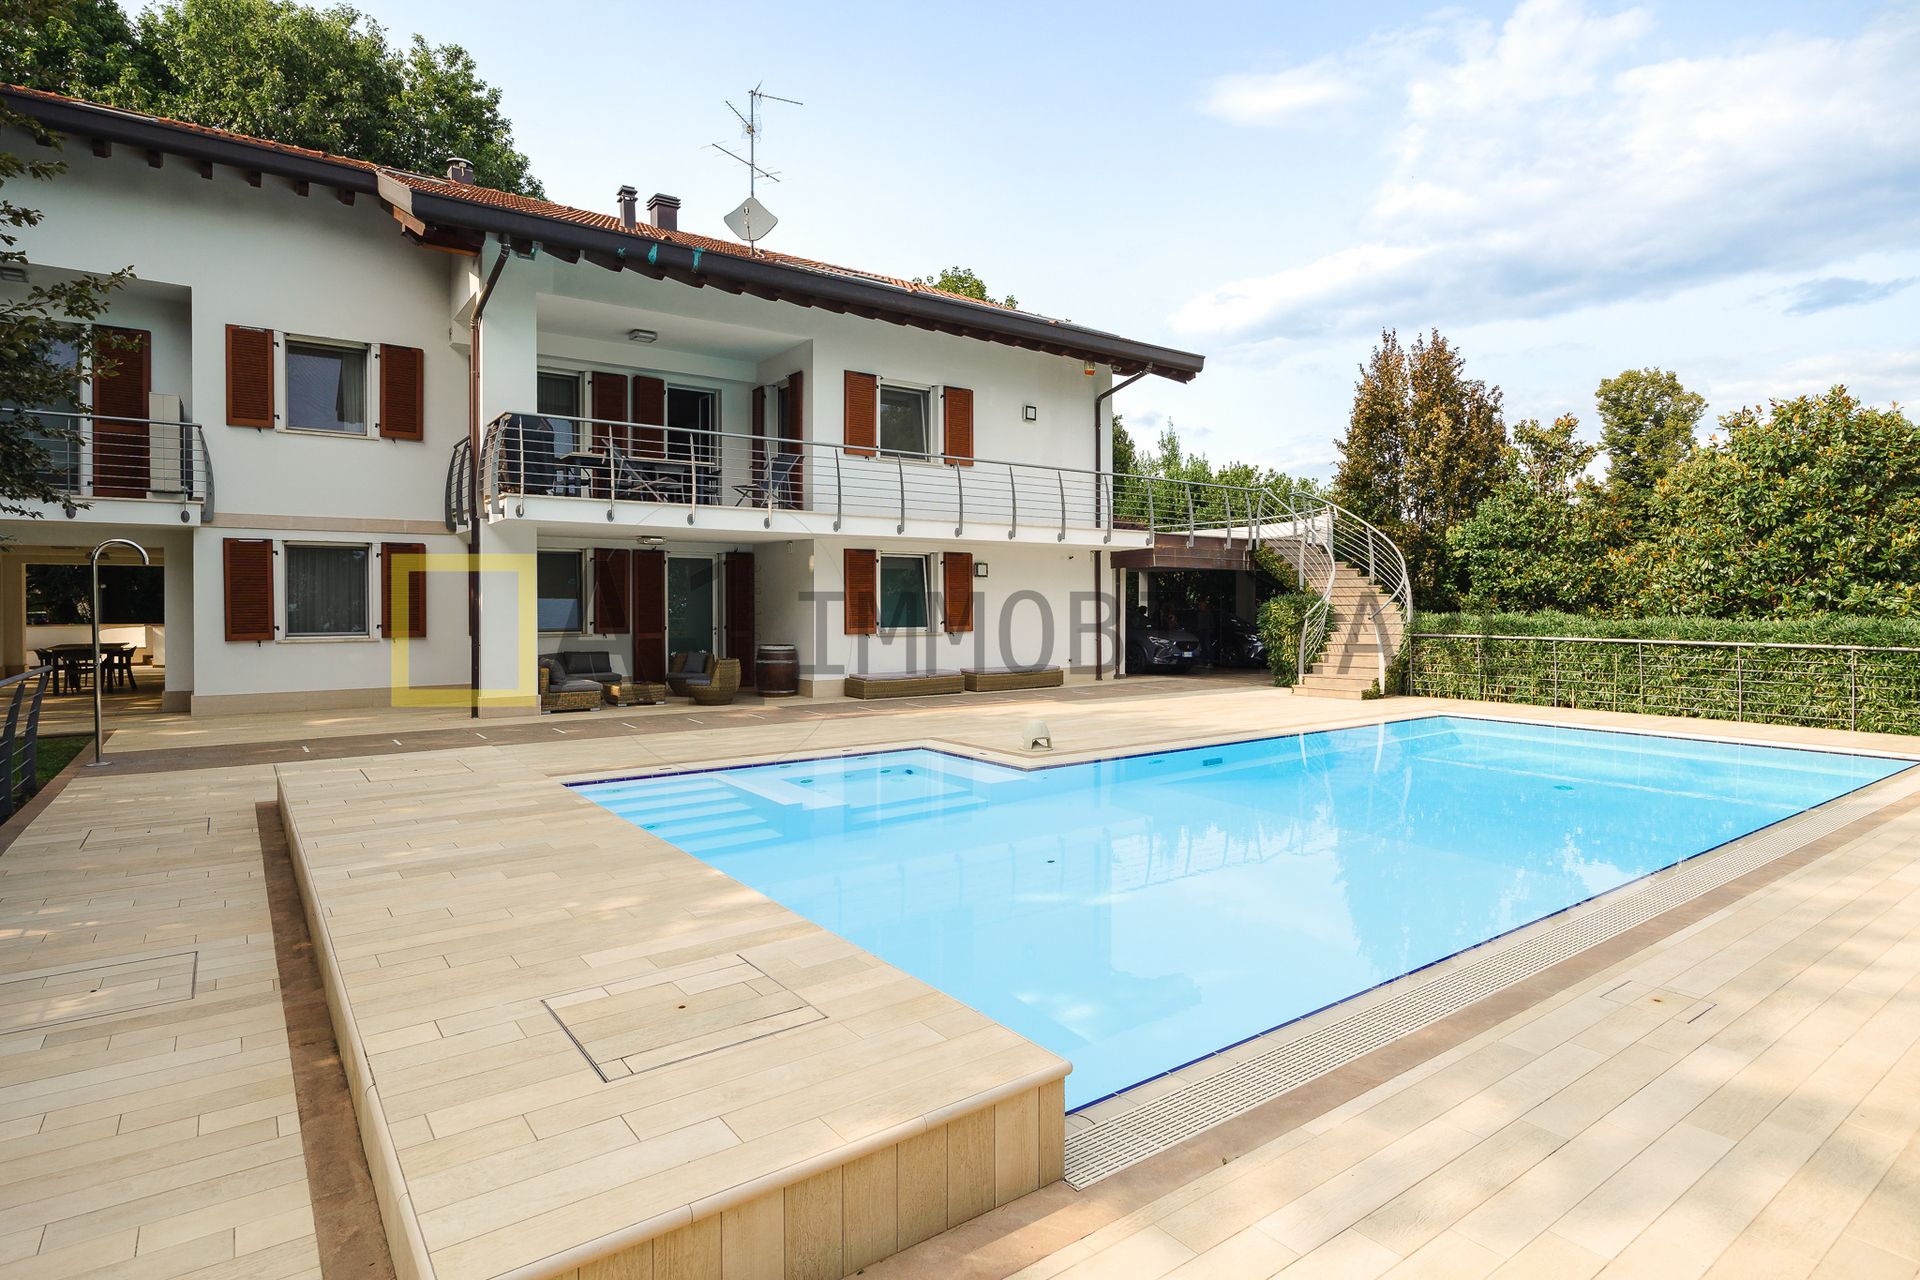 Se vende villa by the lago Monticello Brianza Lombardia